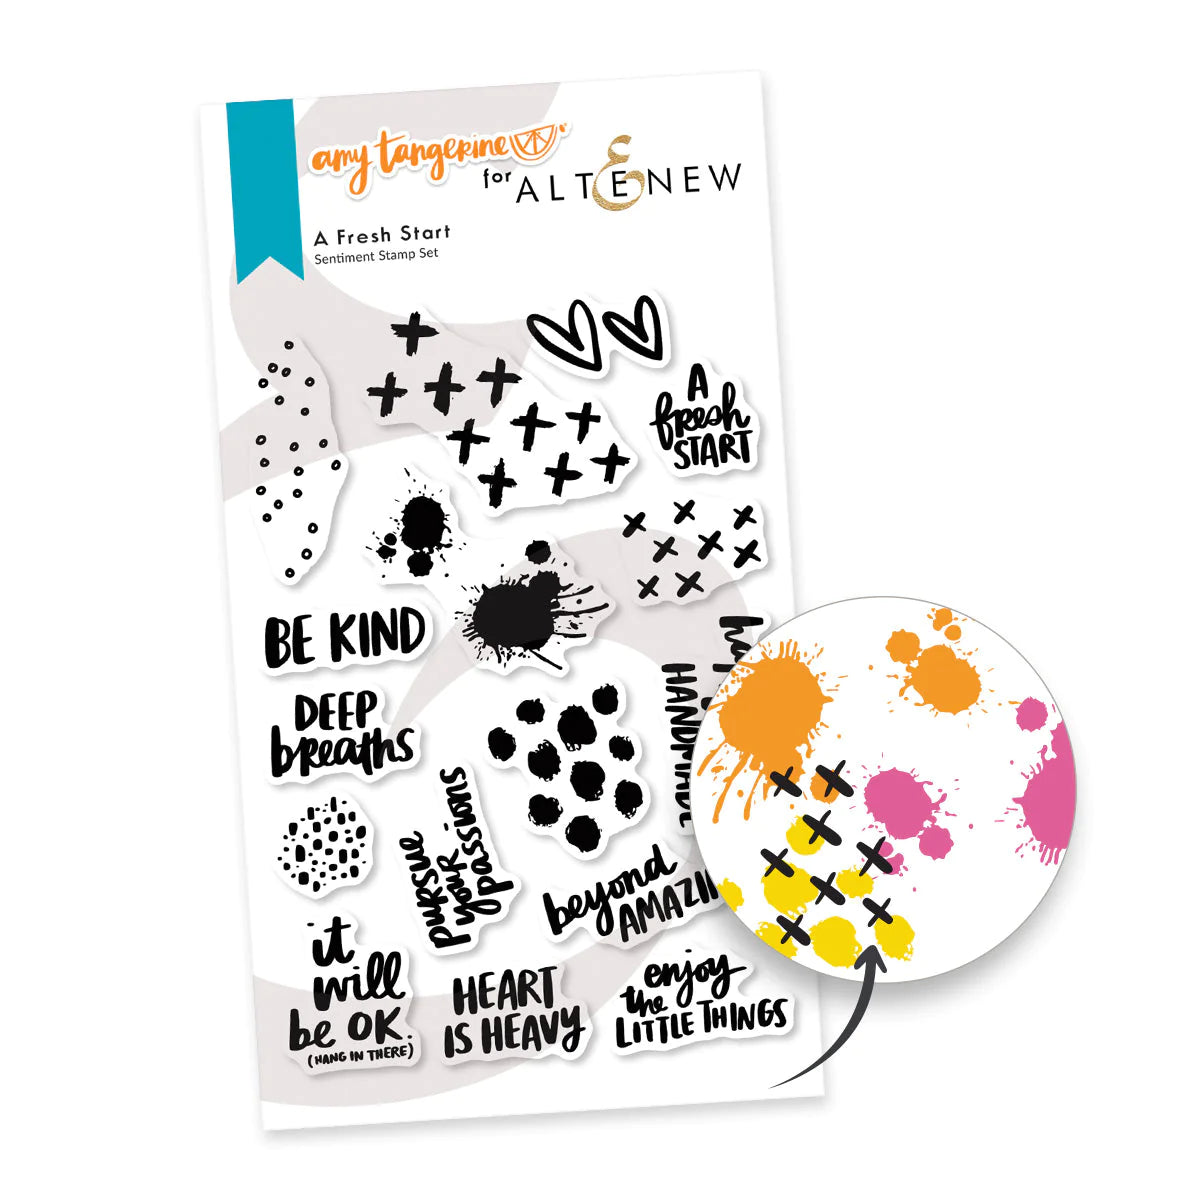 Altenew - Amy Tangerine - A Fresh Start Bundle Stamp Set and Die Set